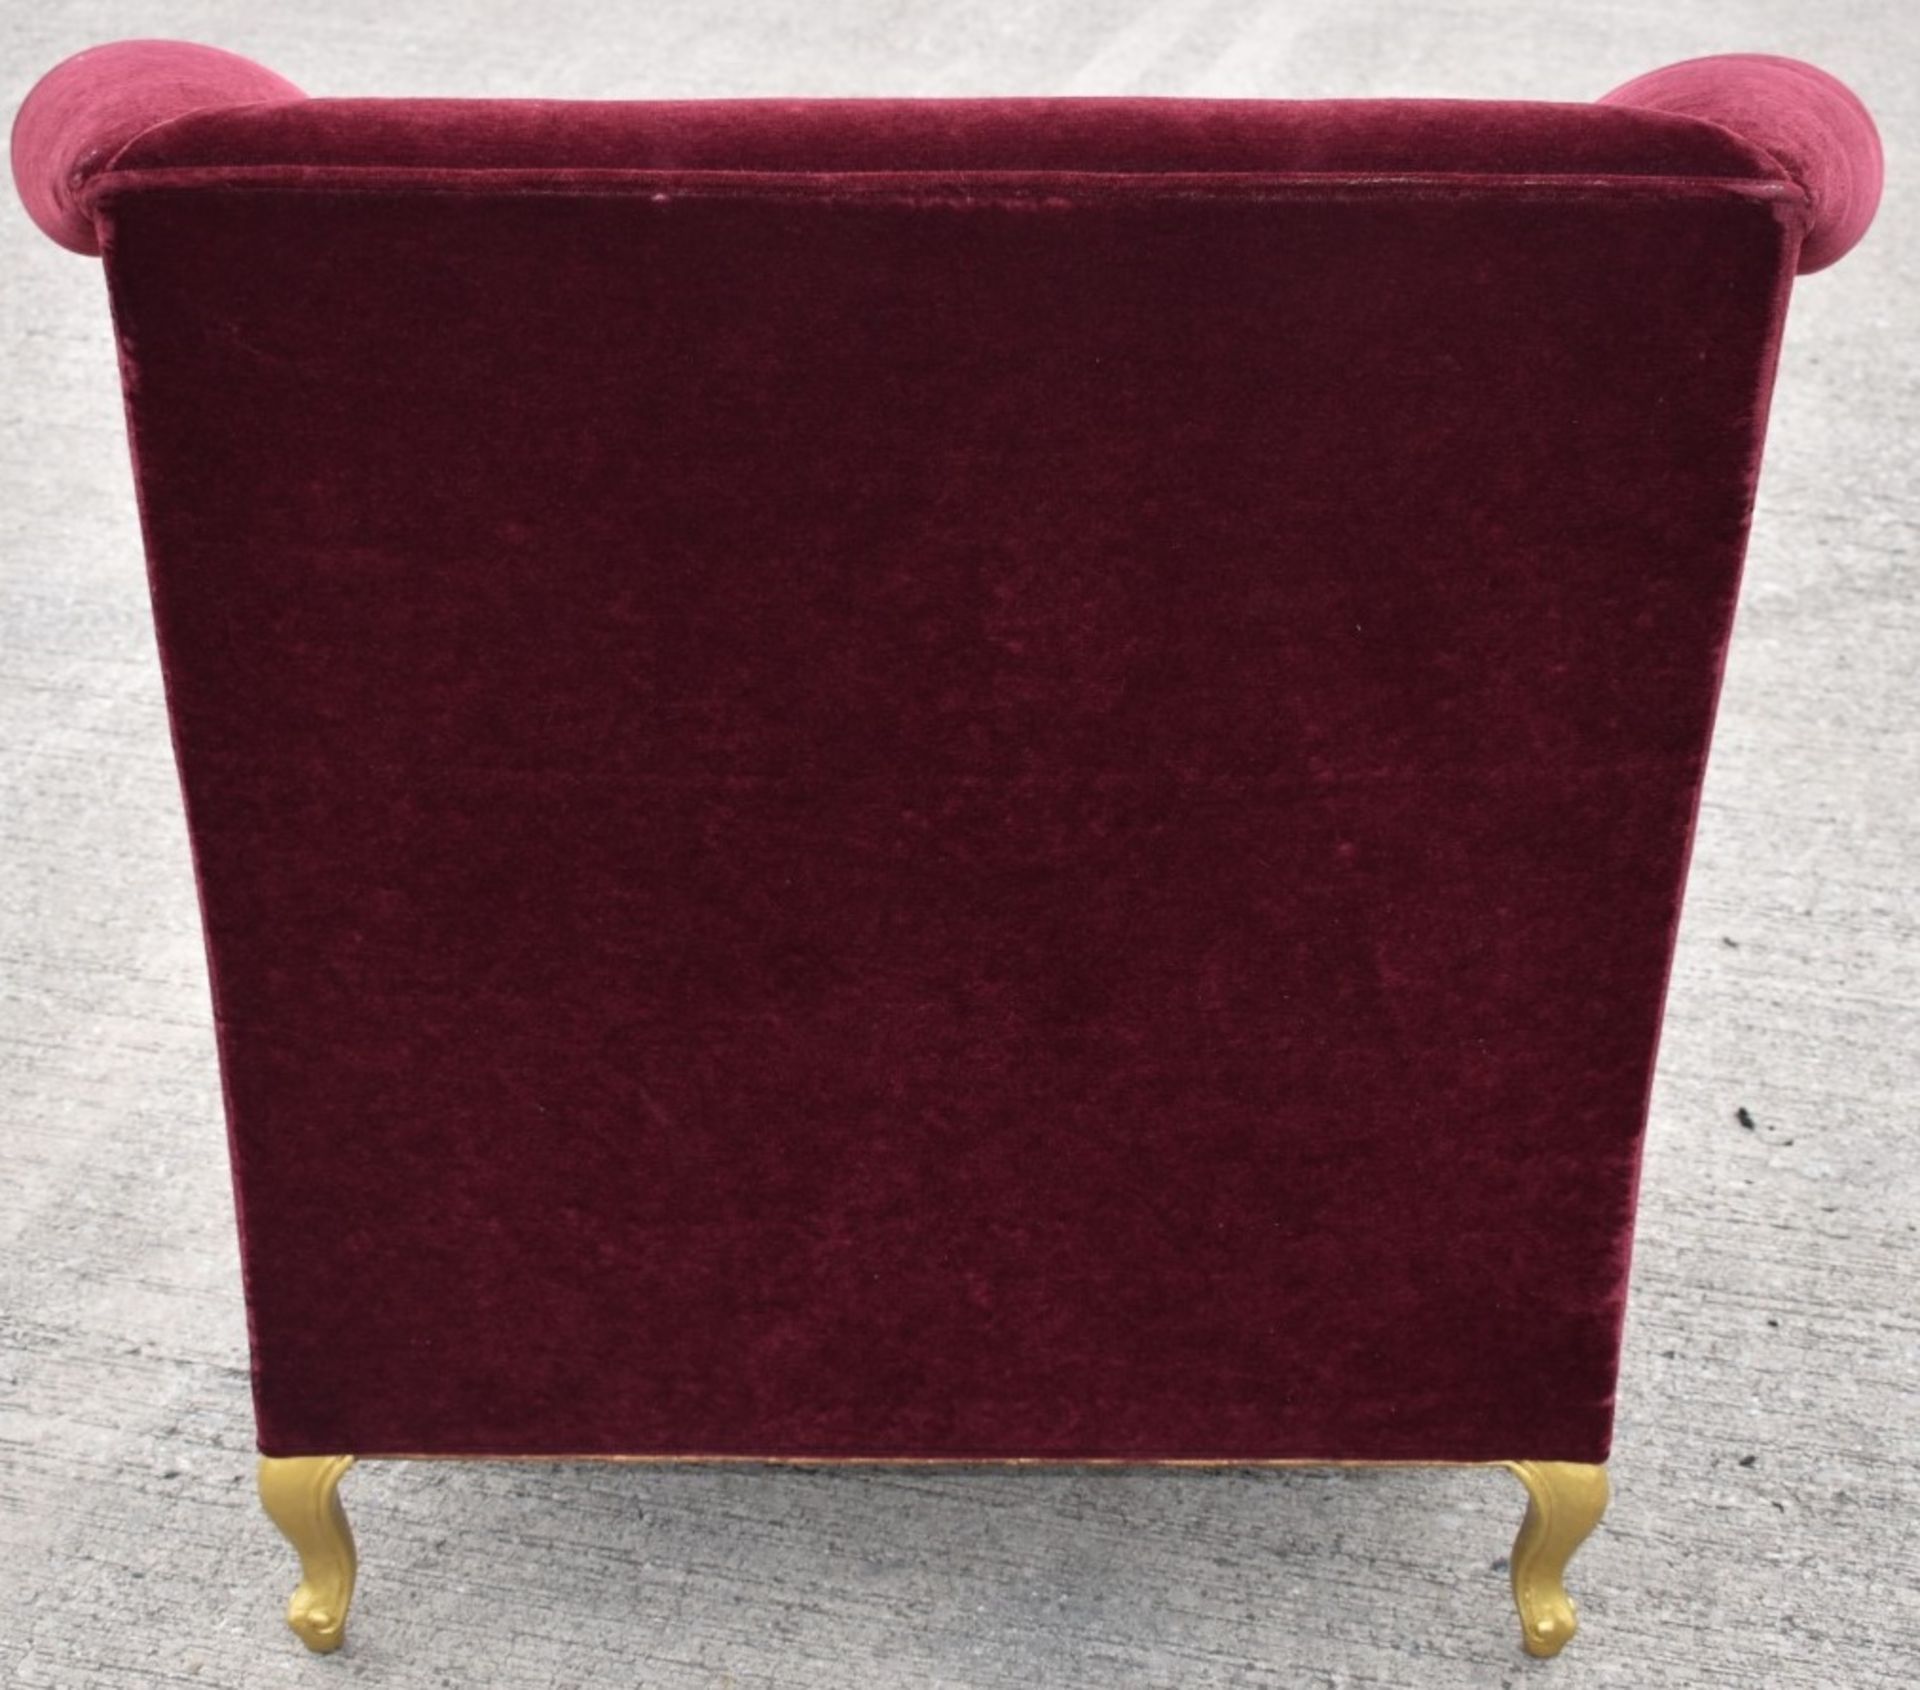 1 x CHRISTOPHER GUY Bespoke Opulent Velvet Upholstered Oversized Armchair - Original Price £4,000 - Image 5 of 9